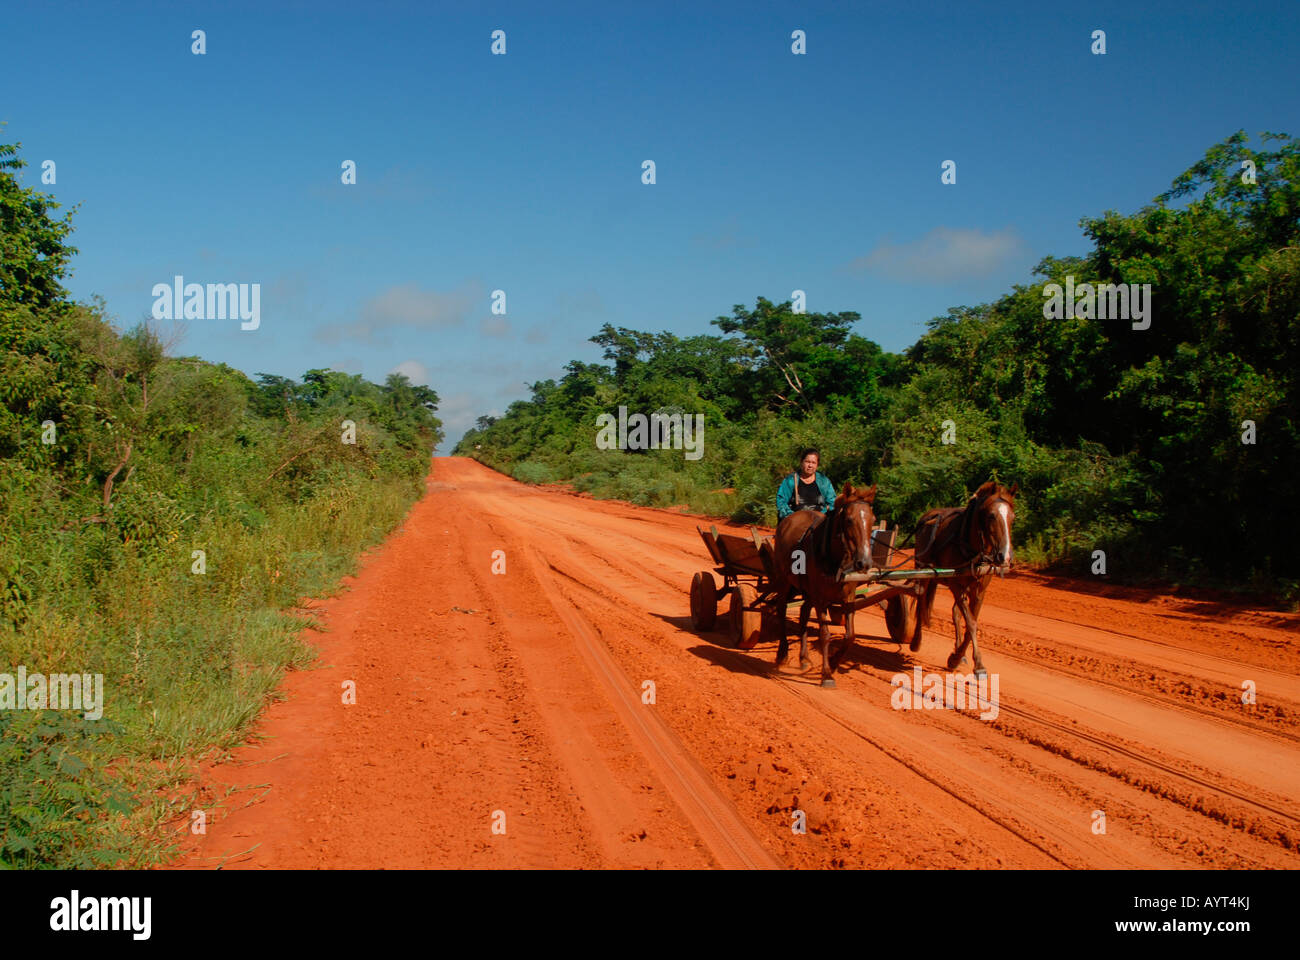 Traditionelle Pferd Kutsche durchqueren rote Feldweg zwischen üppiger grüner Vegetation auf beiden Seite, blauer Himmel, San Pedro, Paraguay Stockfoto